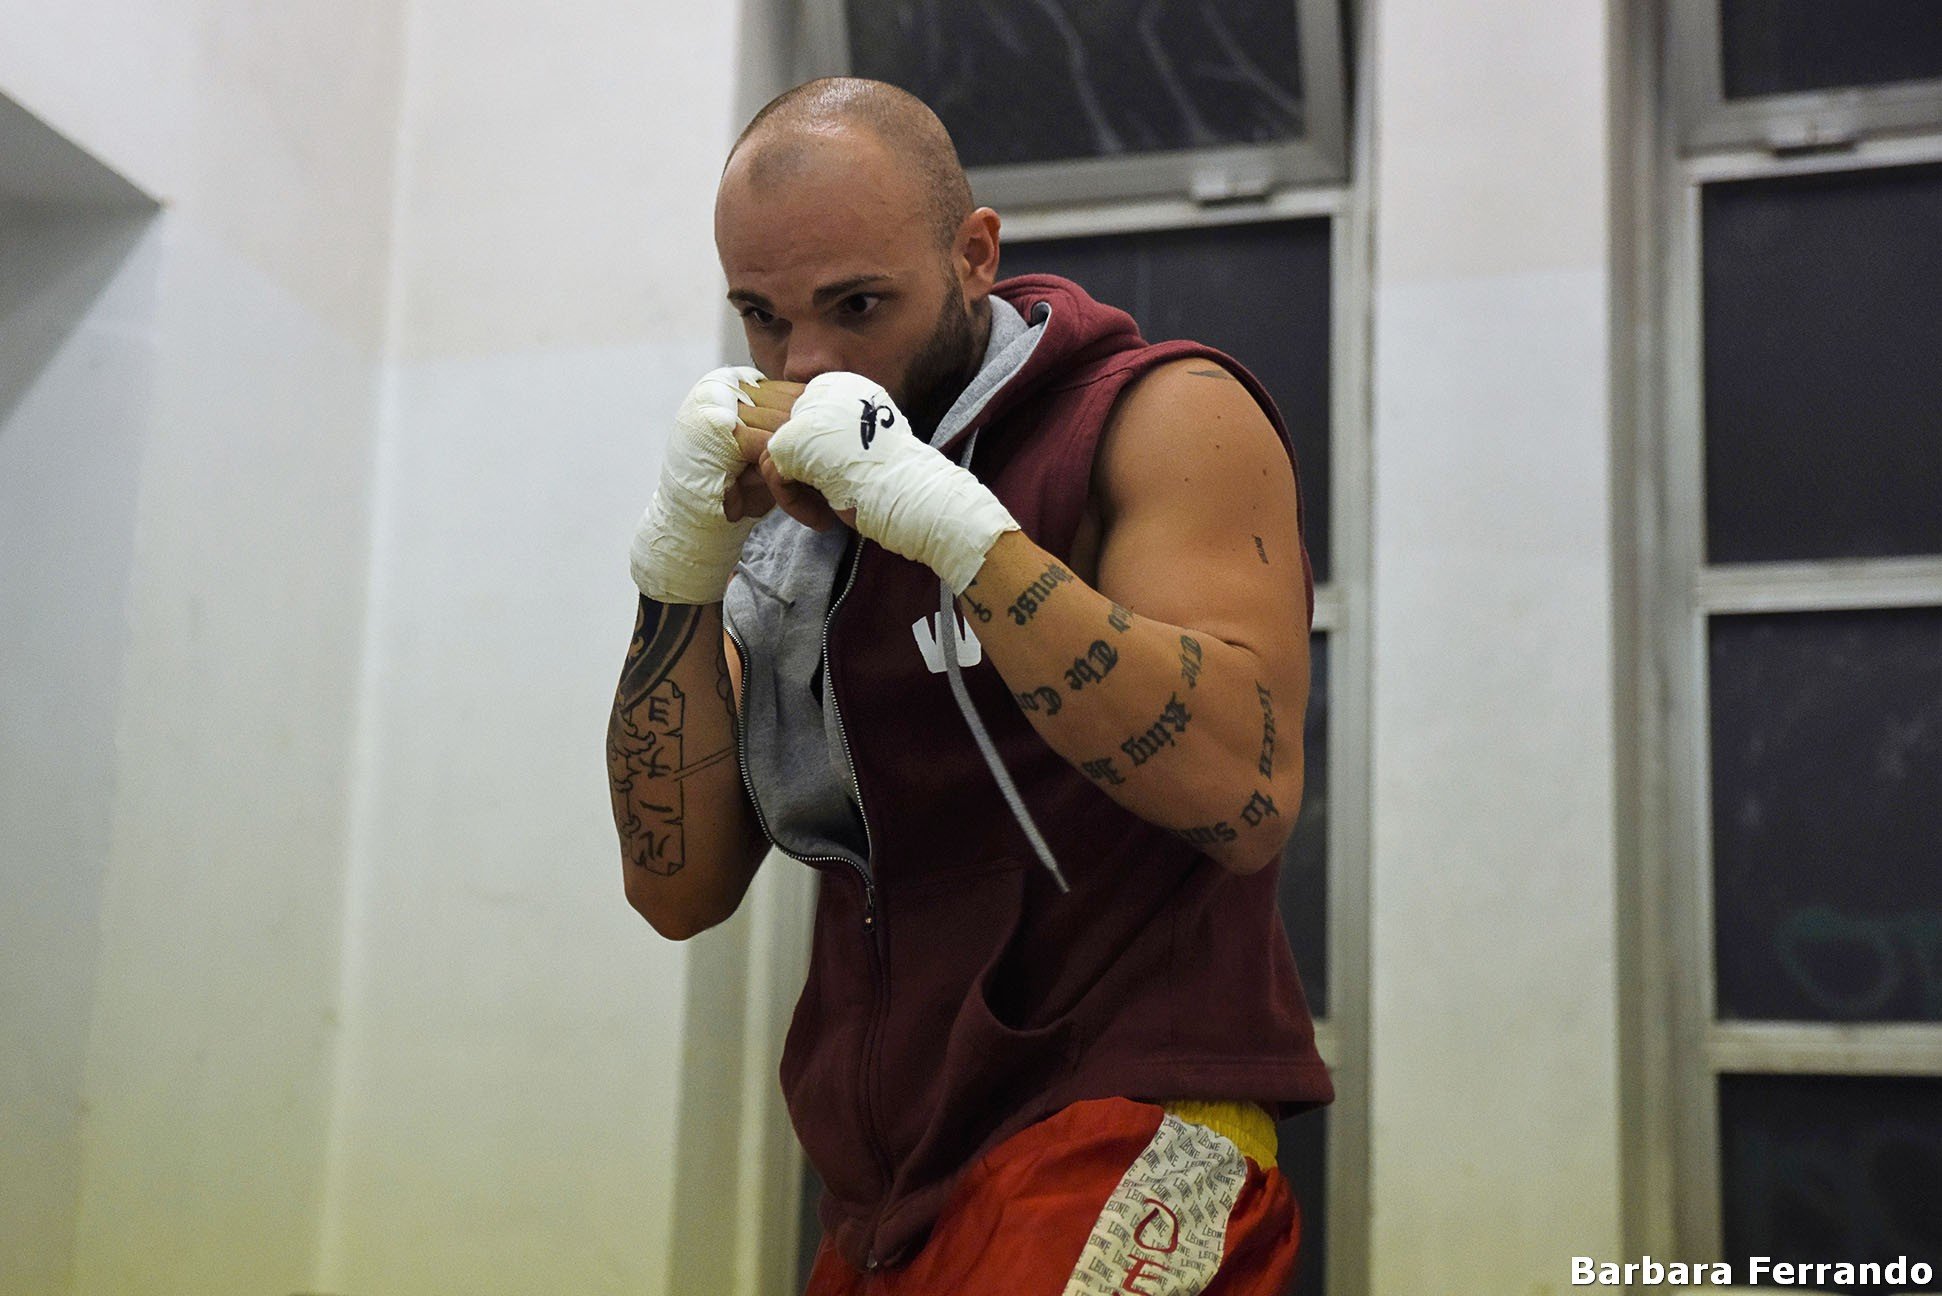 Boxe: Randazzo sul ring ad Alessandria. “Motivazione in più per vincere”